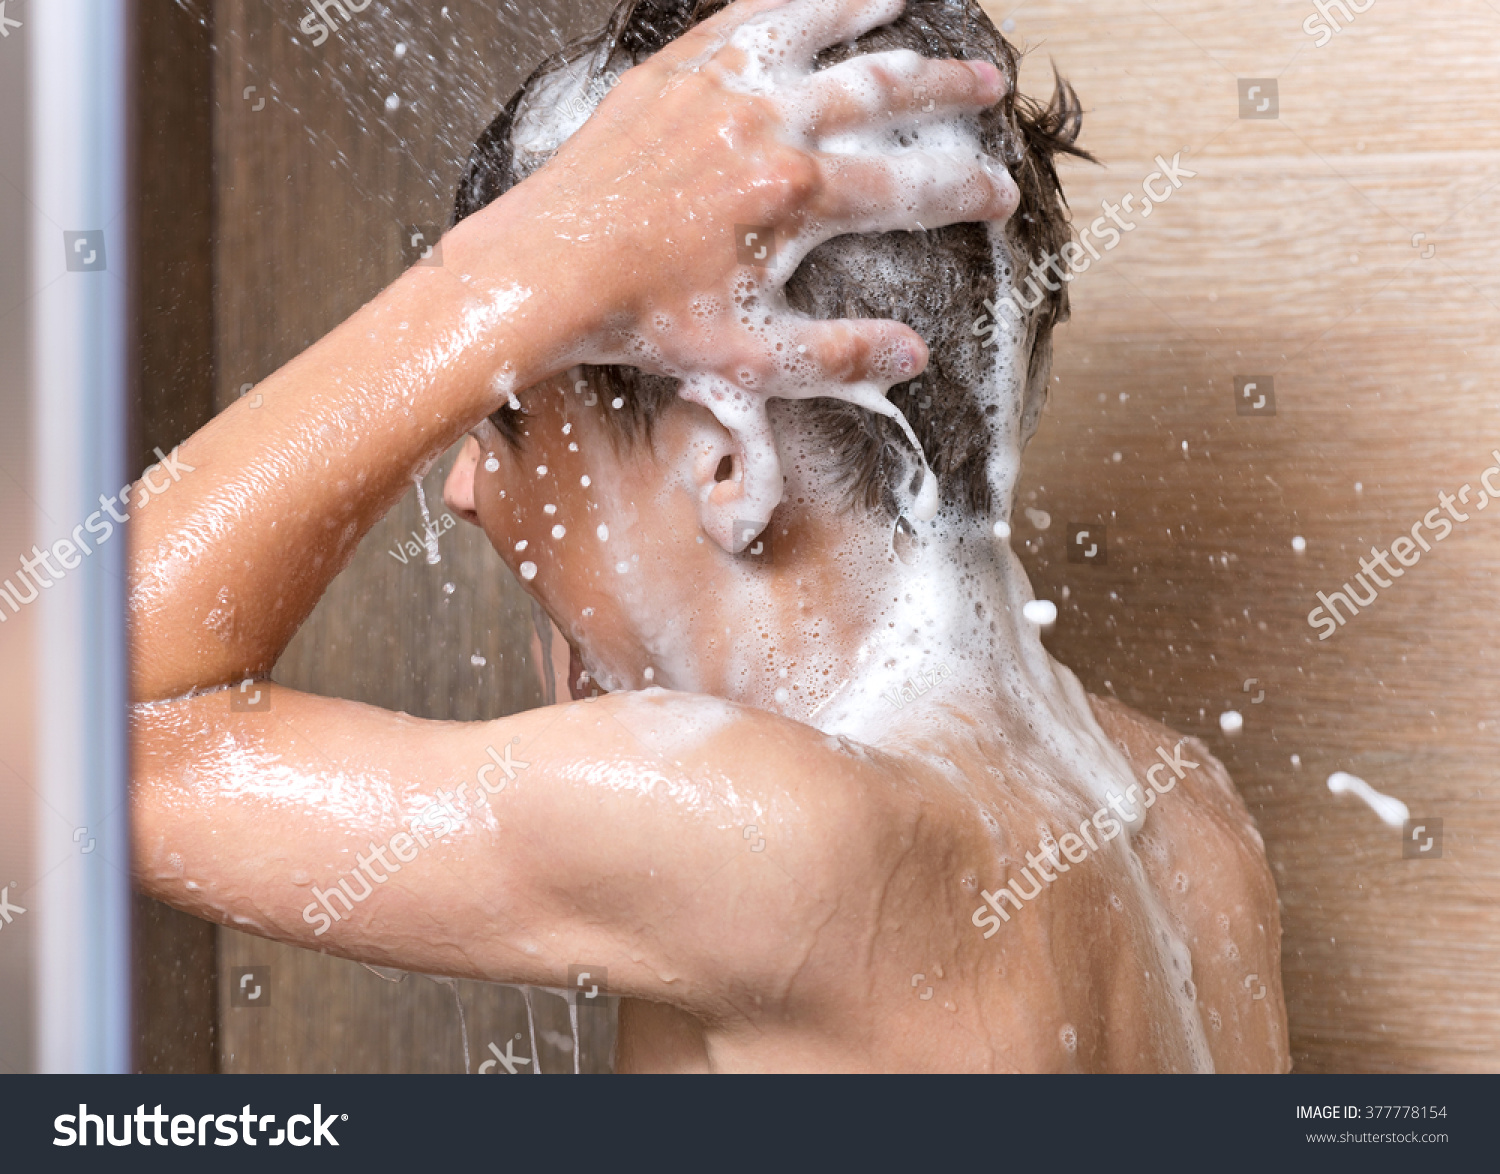 Teens shower